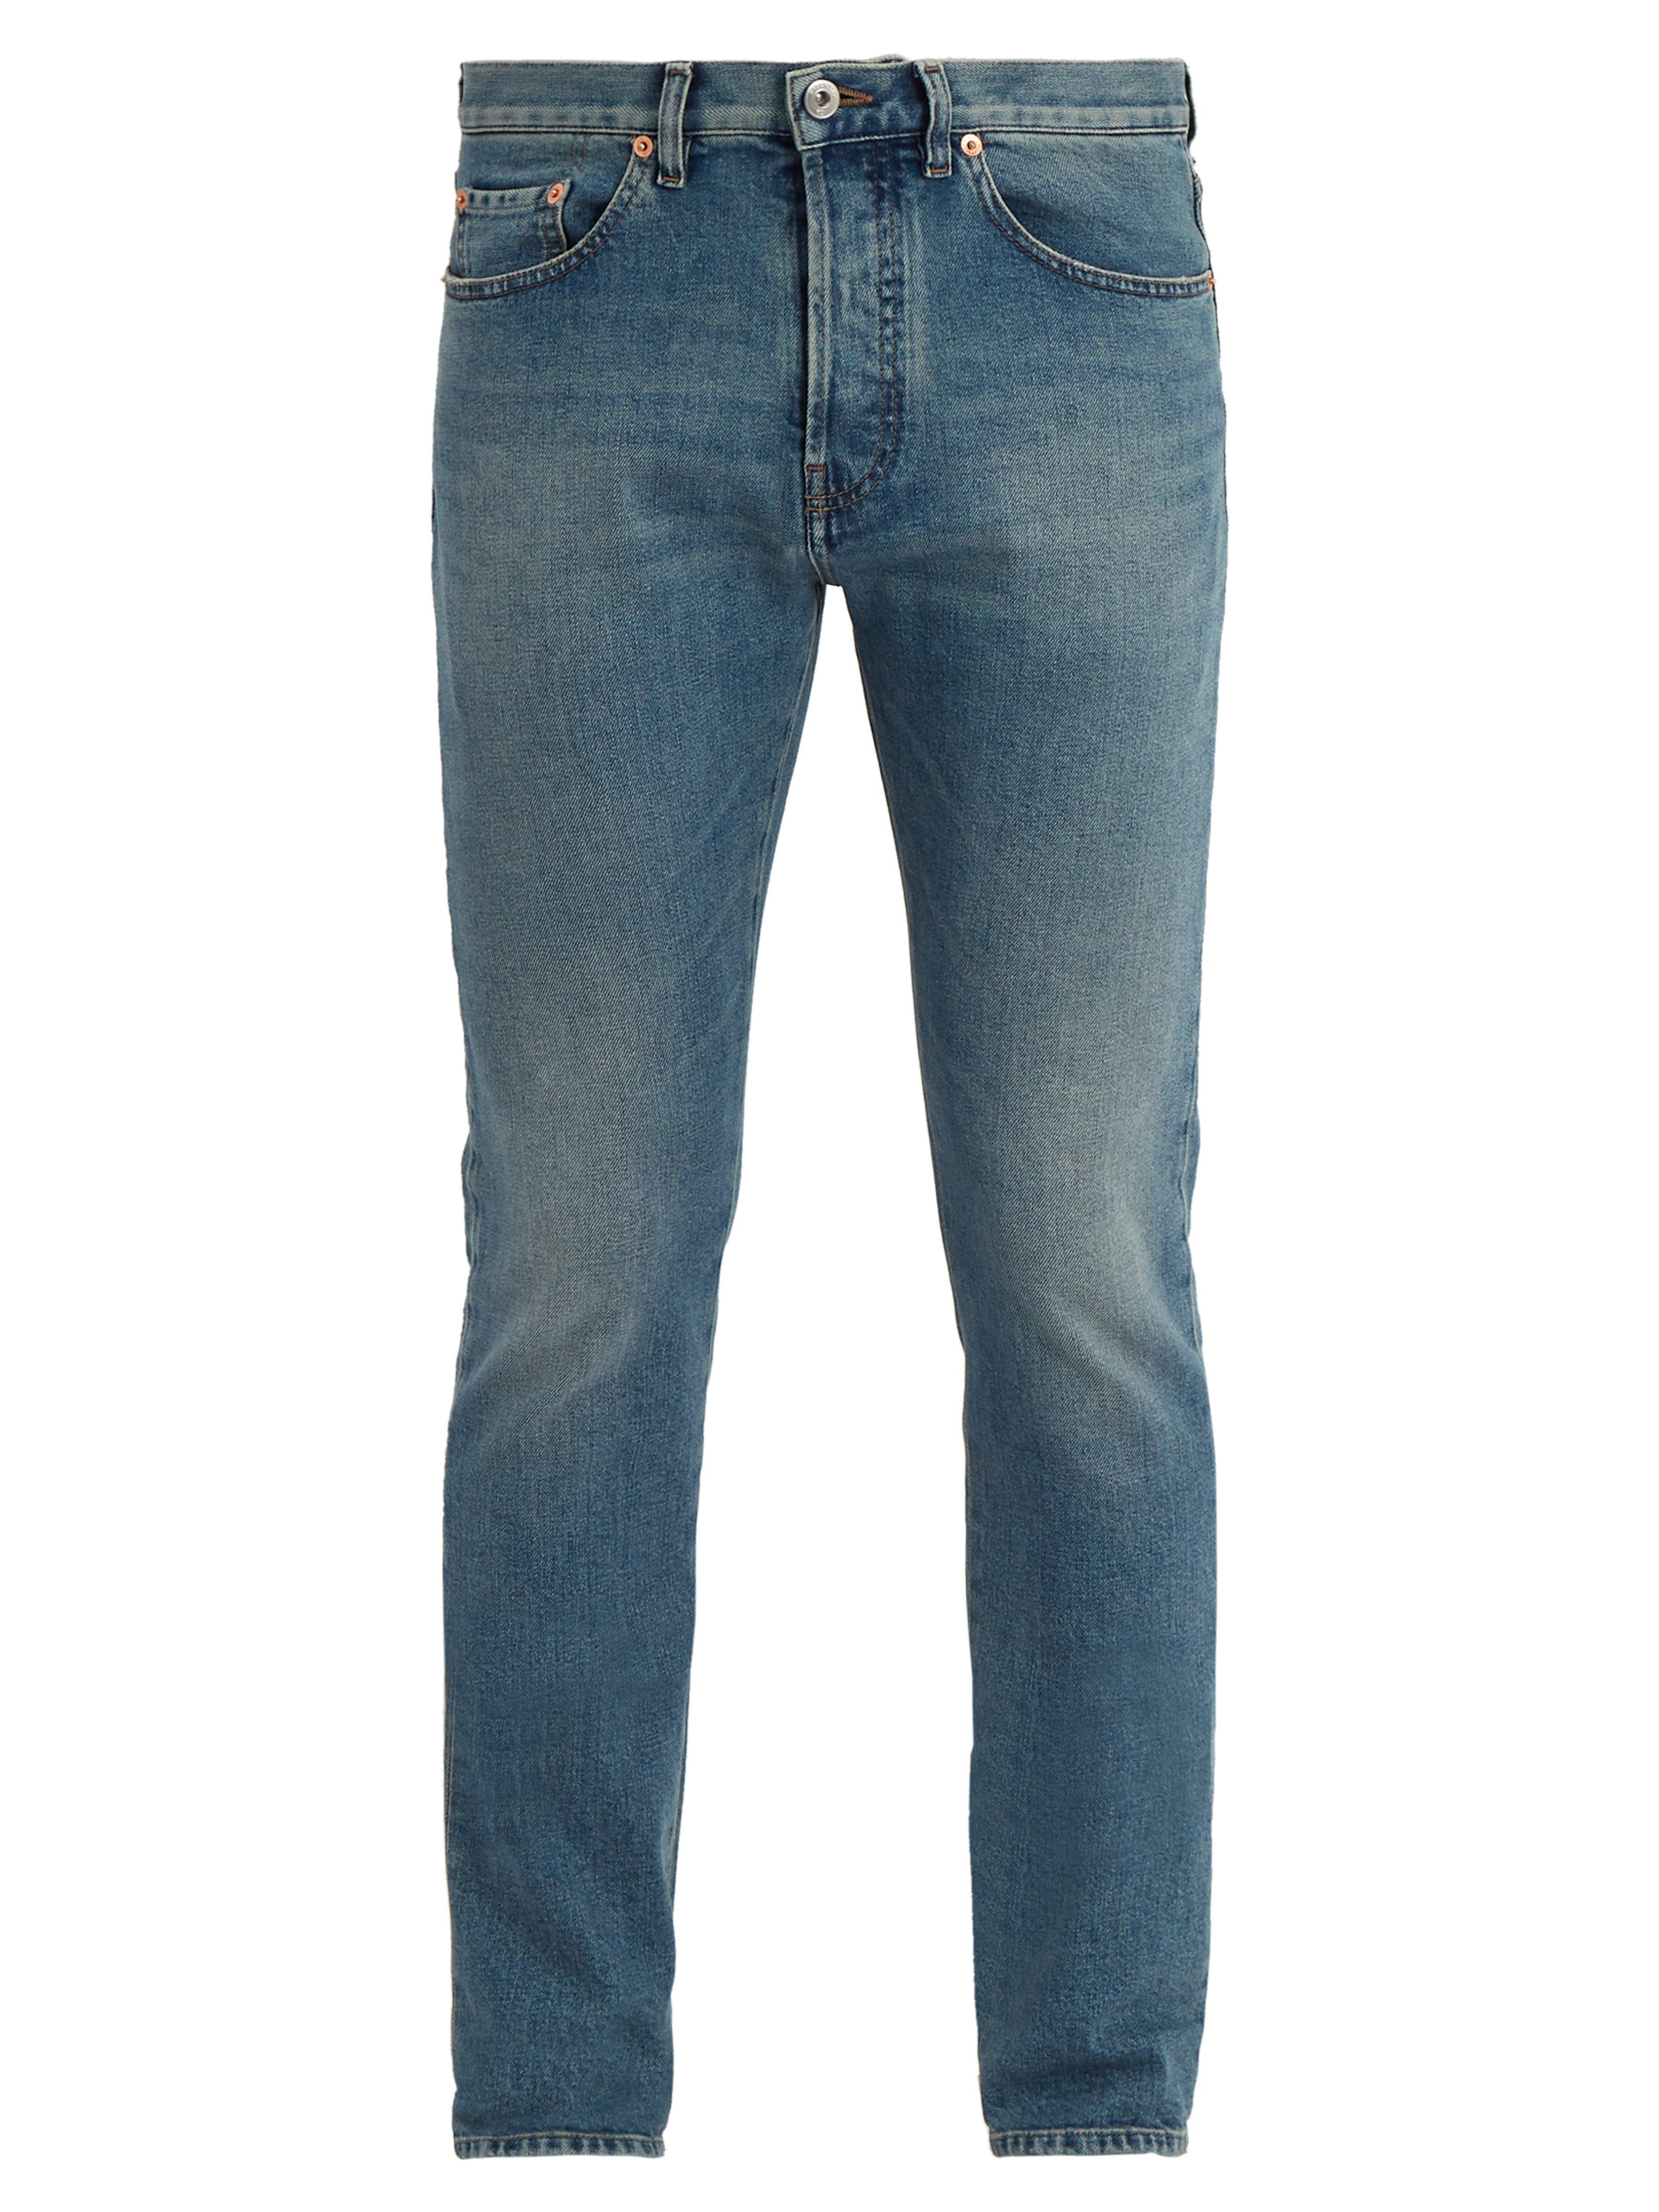 Valentino Denim Mid-rise Slim-leg Jeans in Blue for Men - Lyst